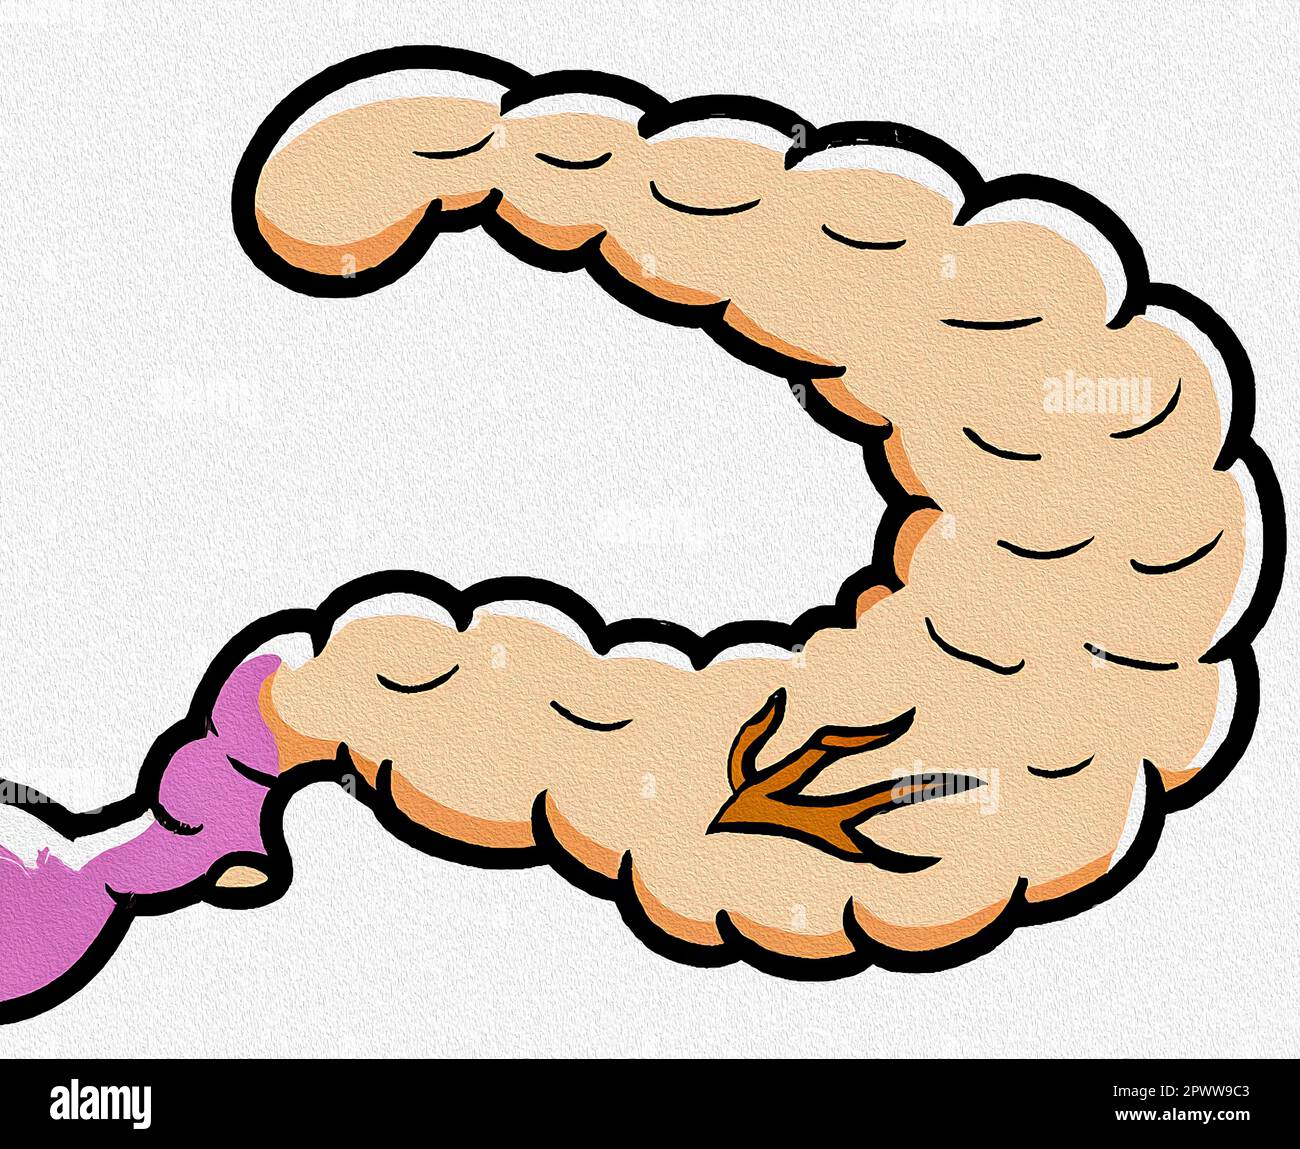 Pancreas cartoon Stock Photo